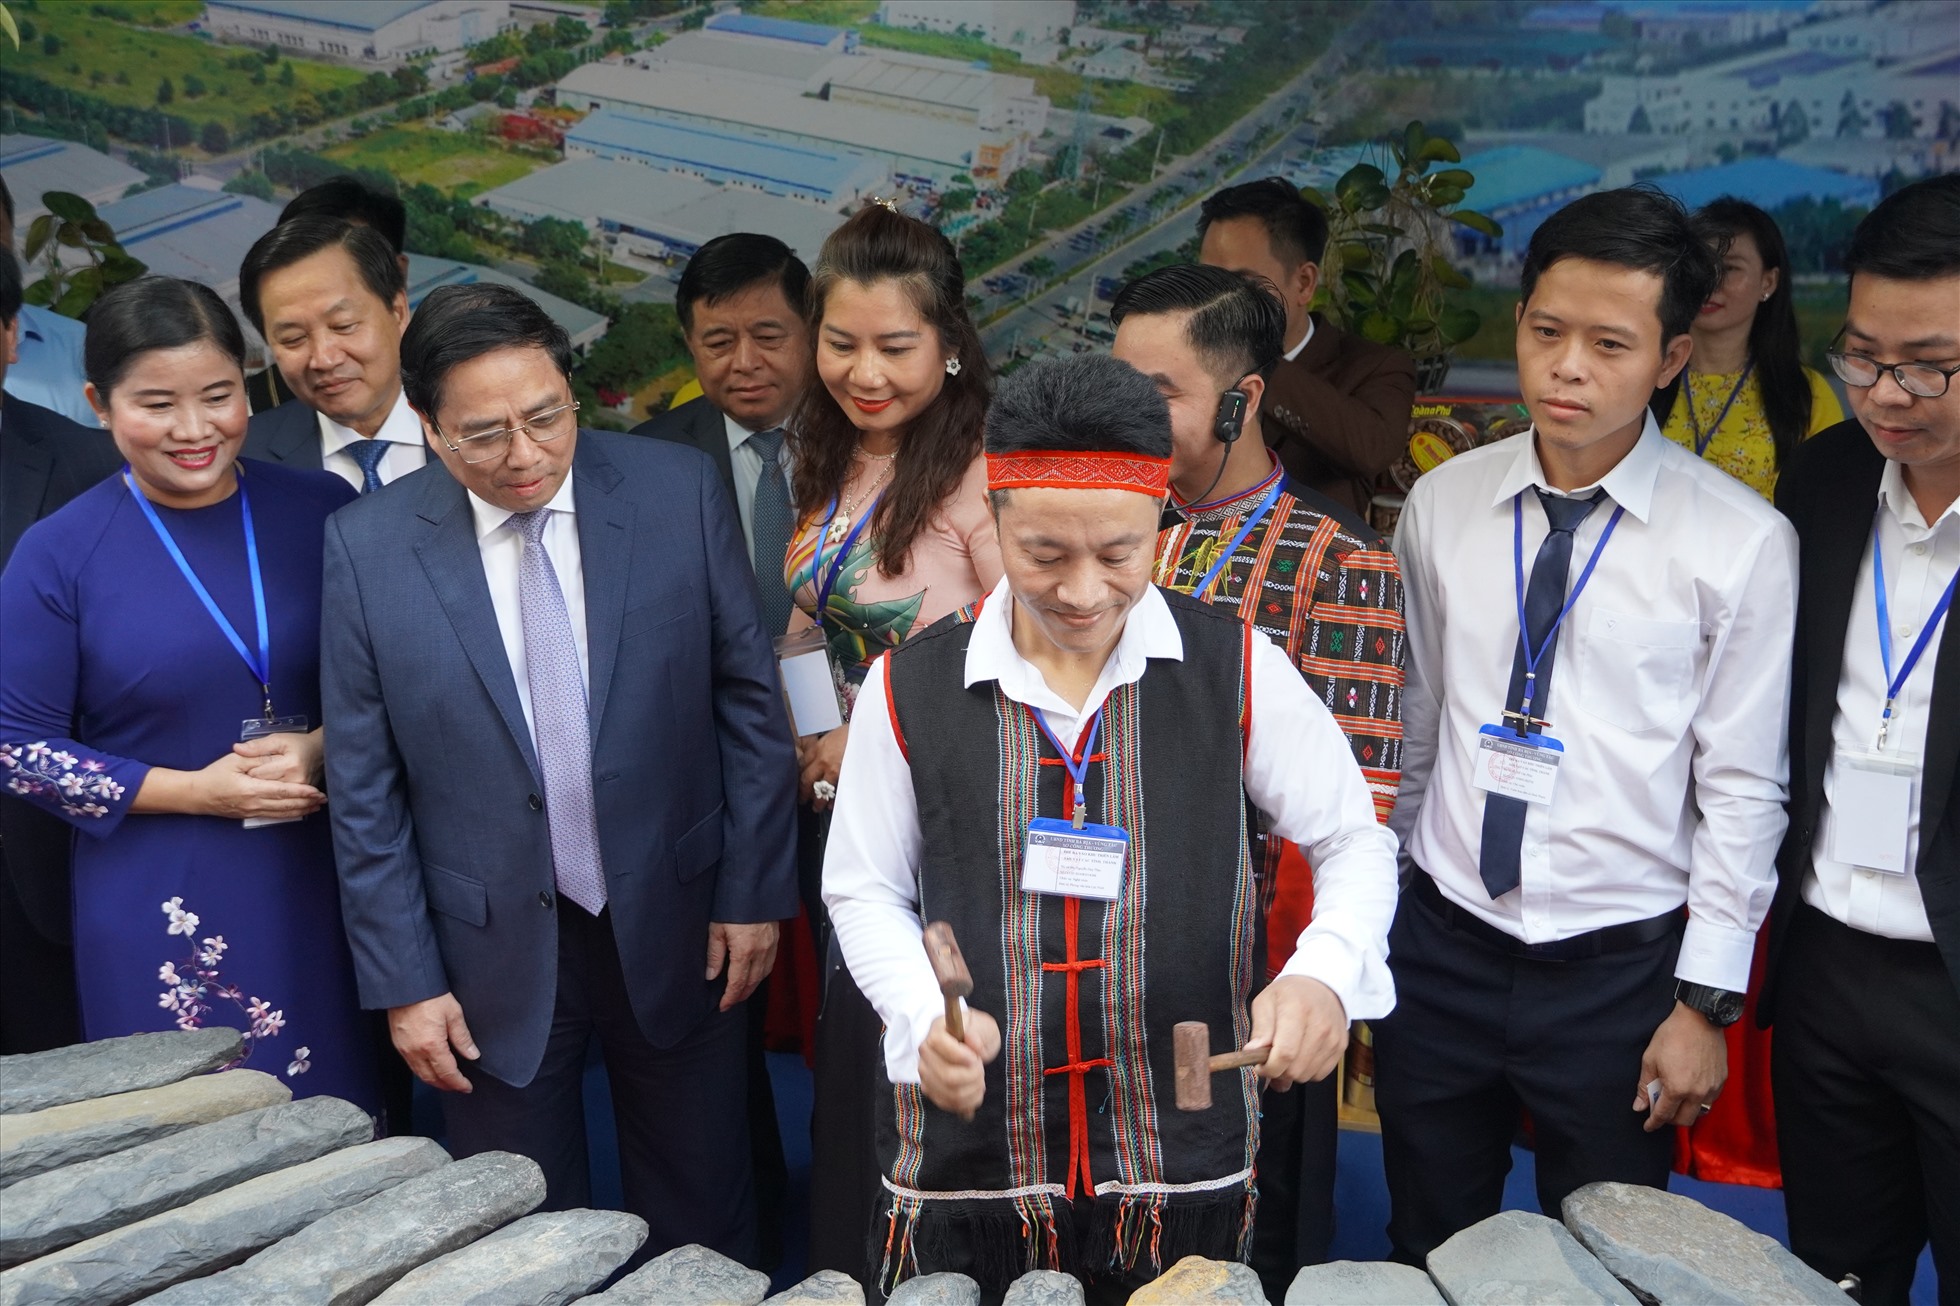 Thủ tướng tham quan trình diễn đàn đá tại gian hàng trưng bày của tỉnh Bình Phước. Ảnh: Thành An